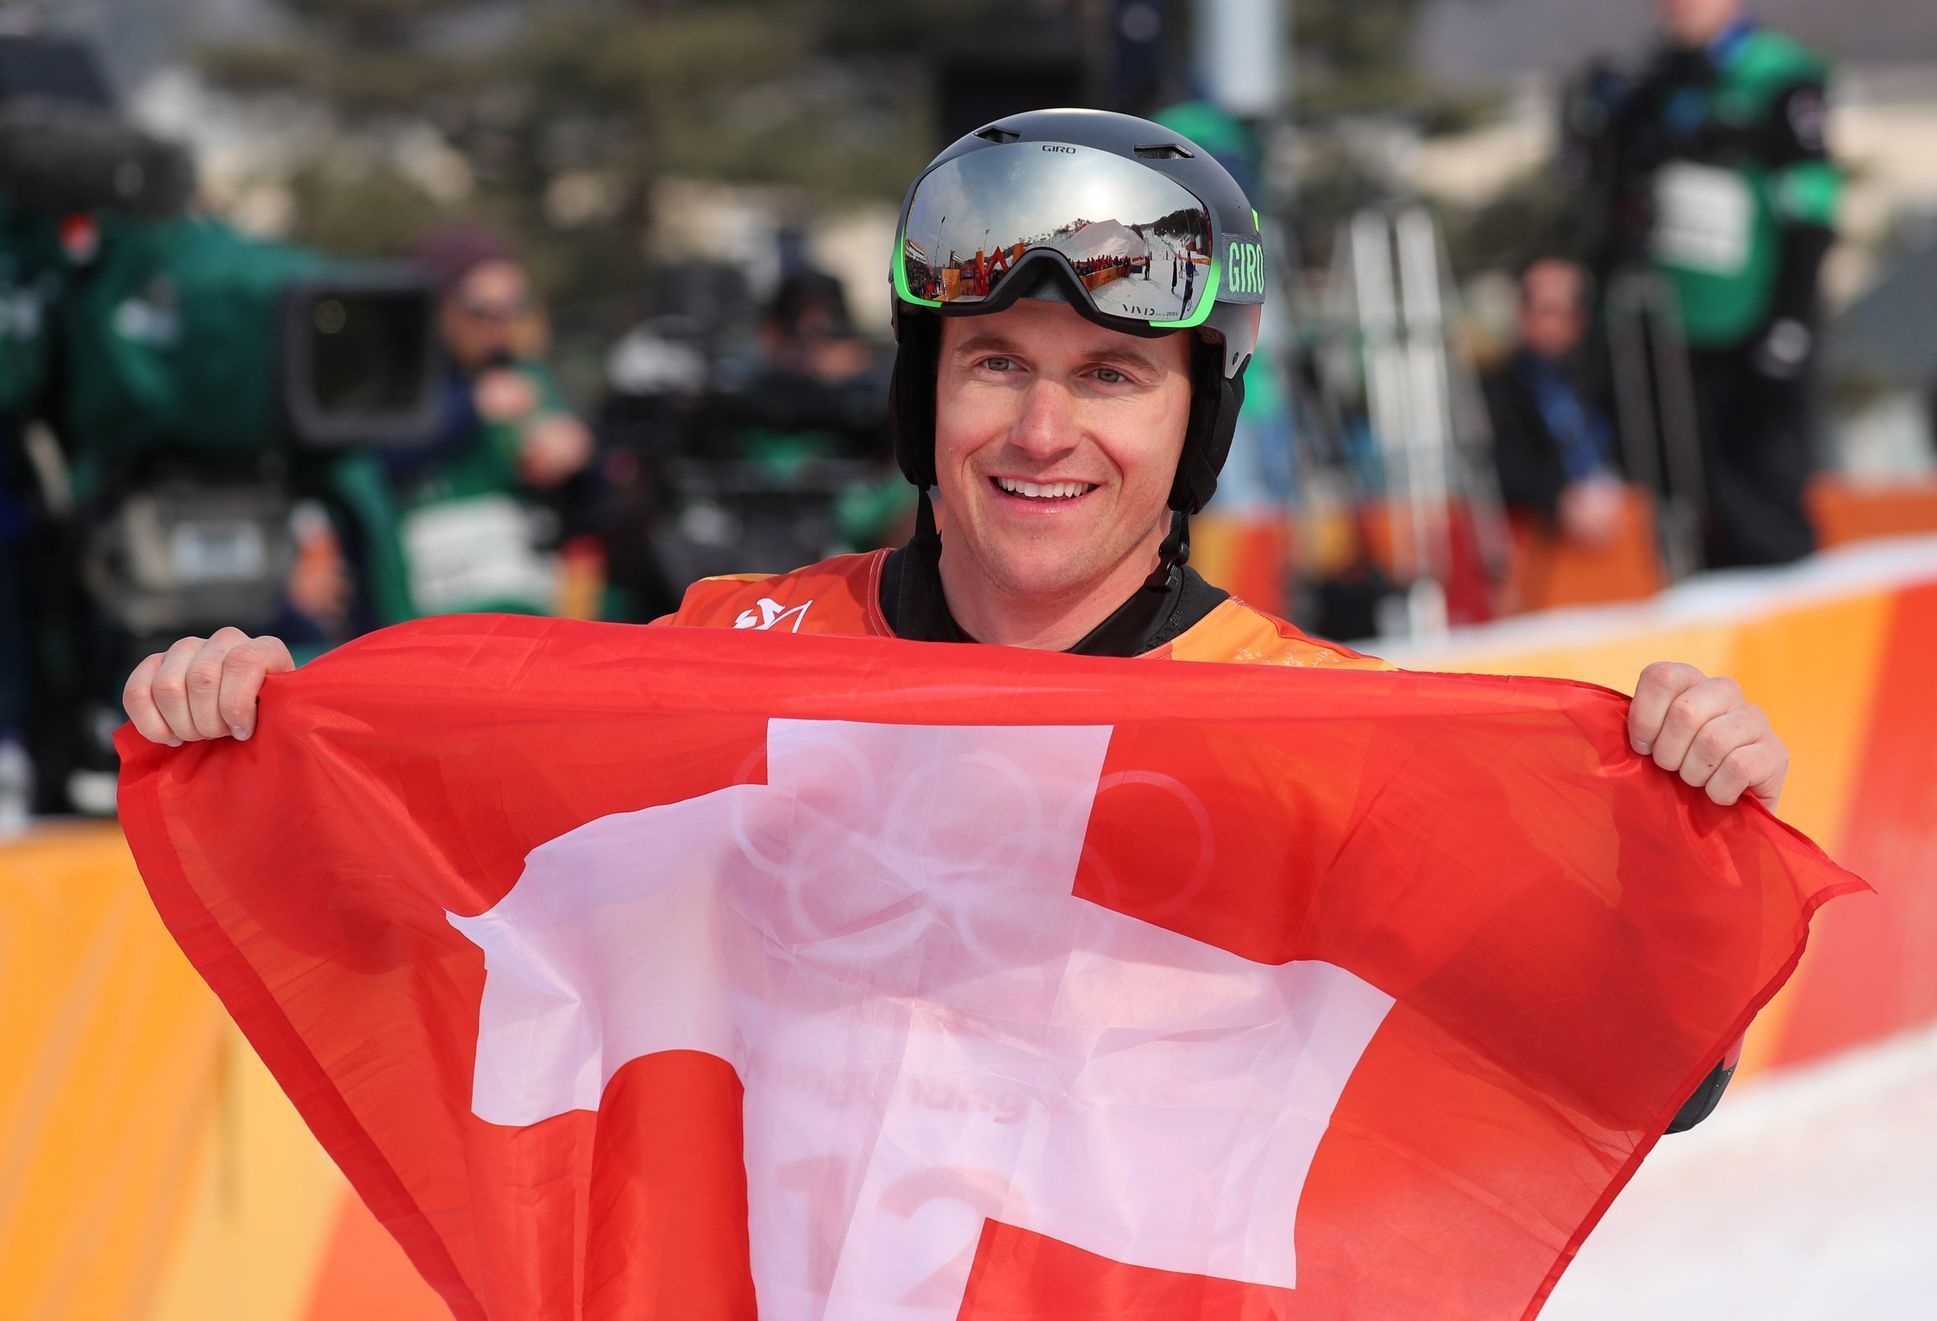 Švýcar Nevin Galmarini slaví zlato z paralelního obřího slalomu na ZOH 2018